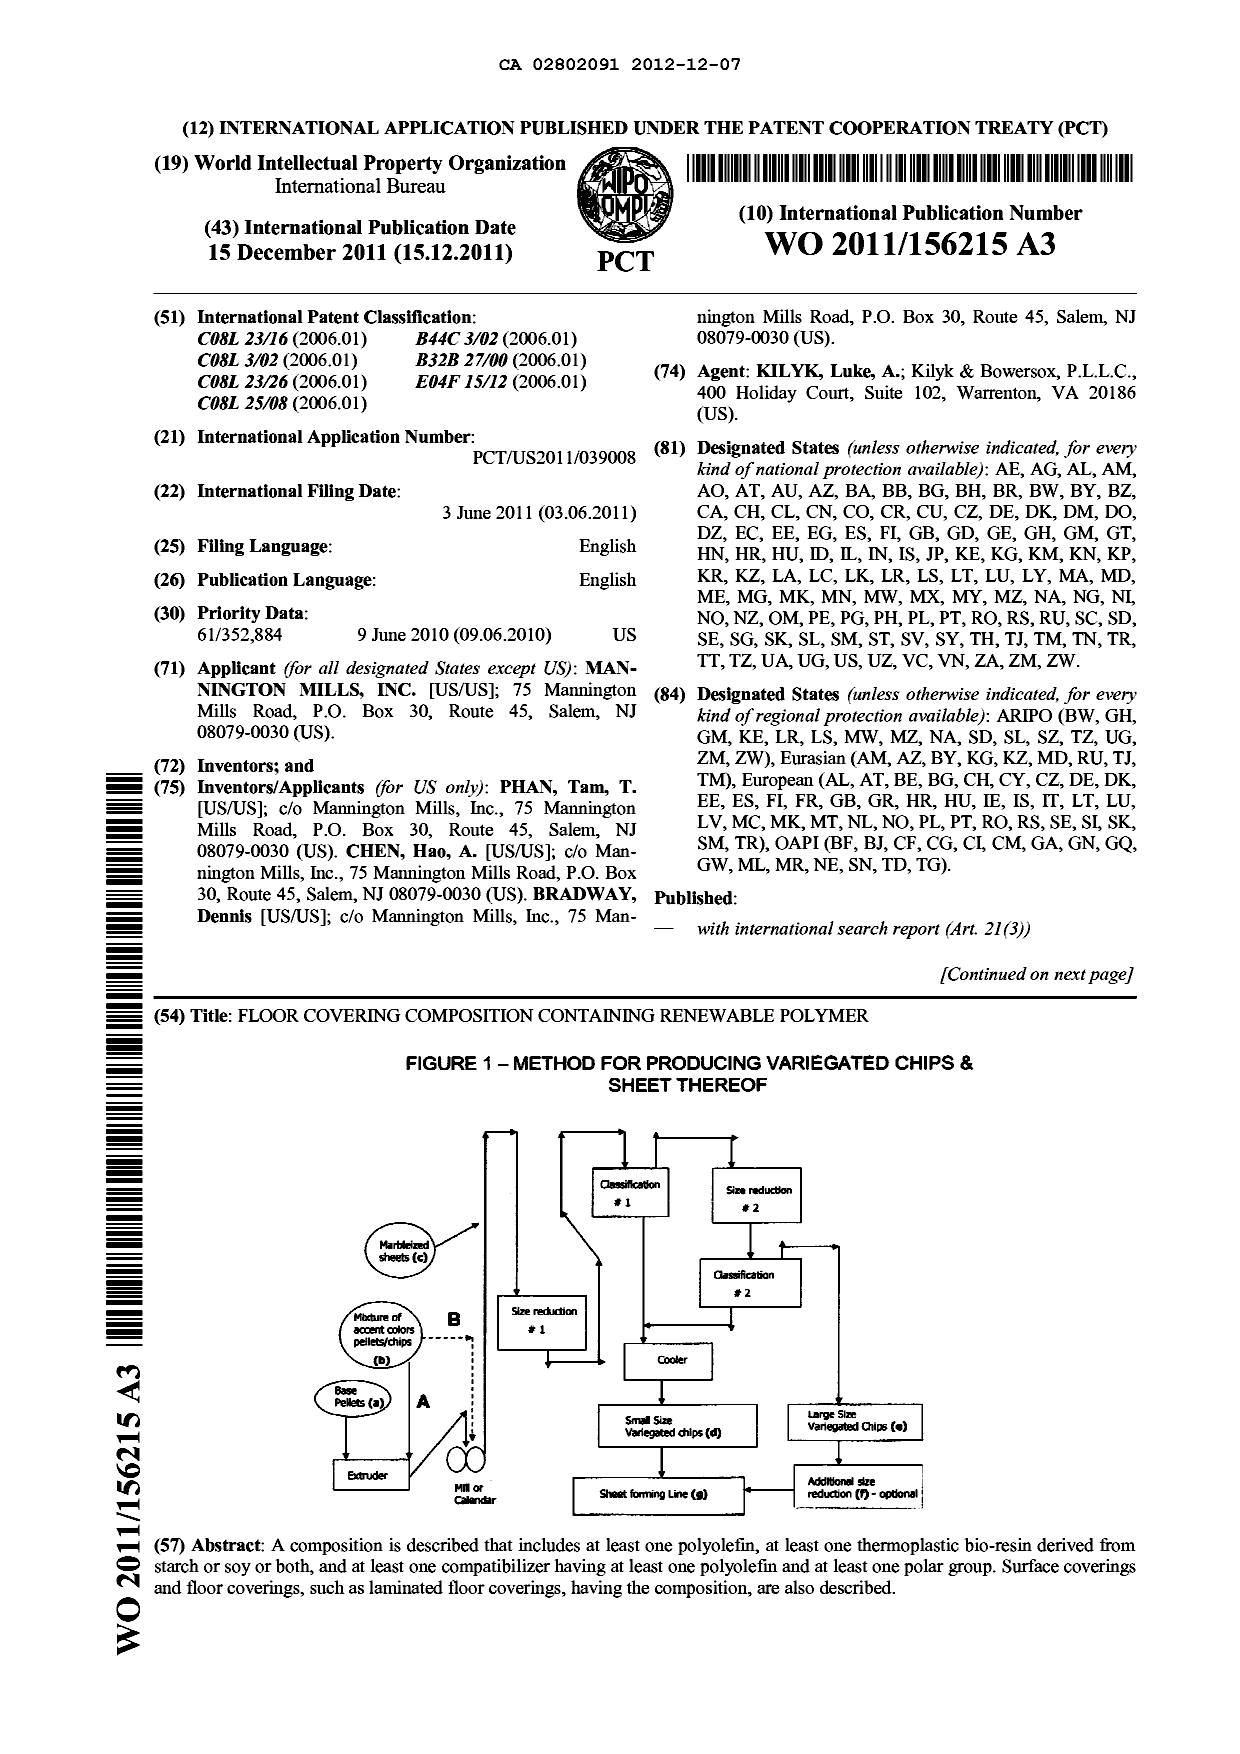 Document de brevet canadien 2802091. Abrégé 20121207. Image 1 de 2